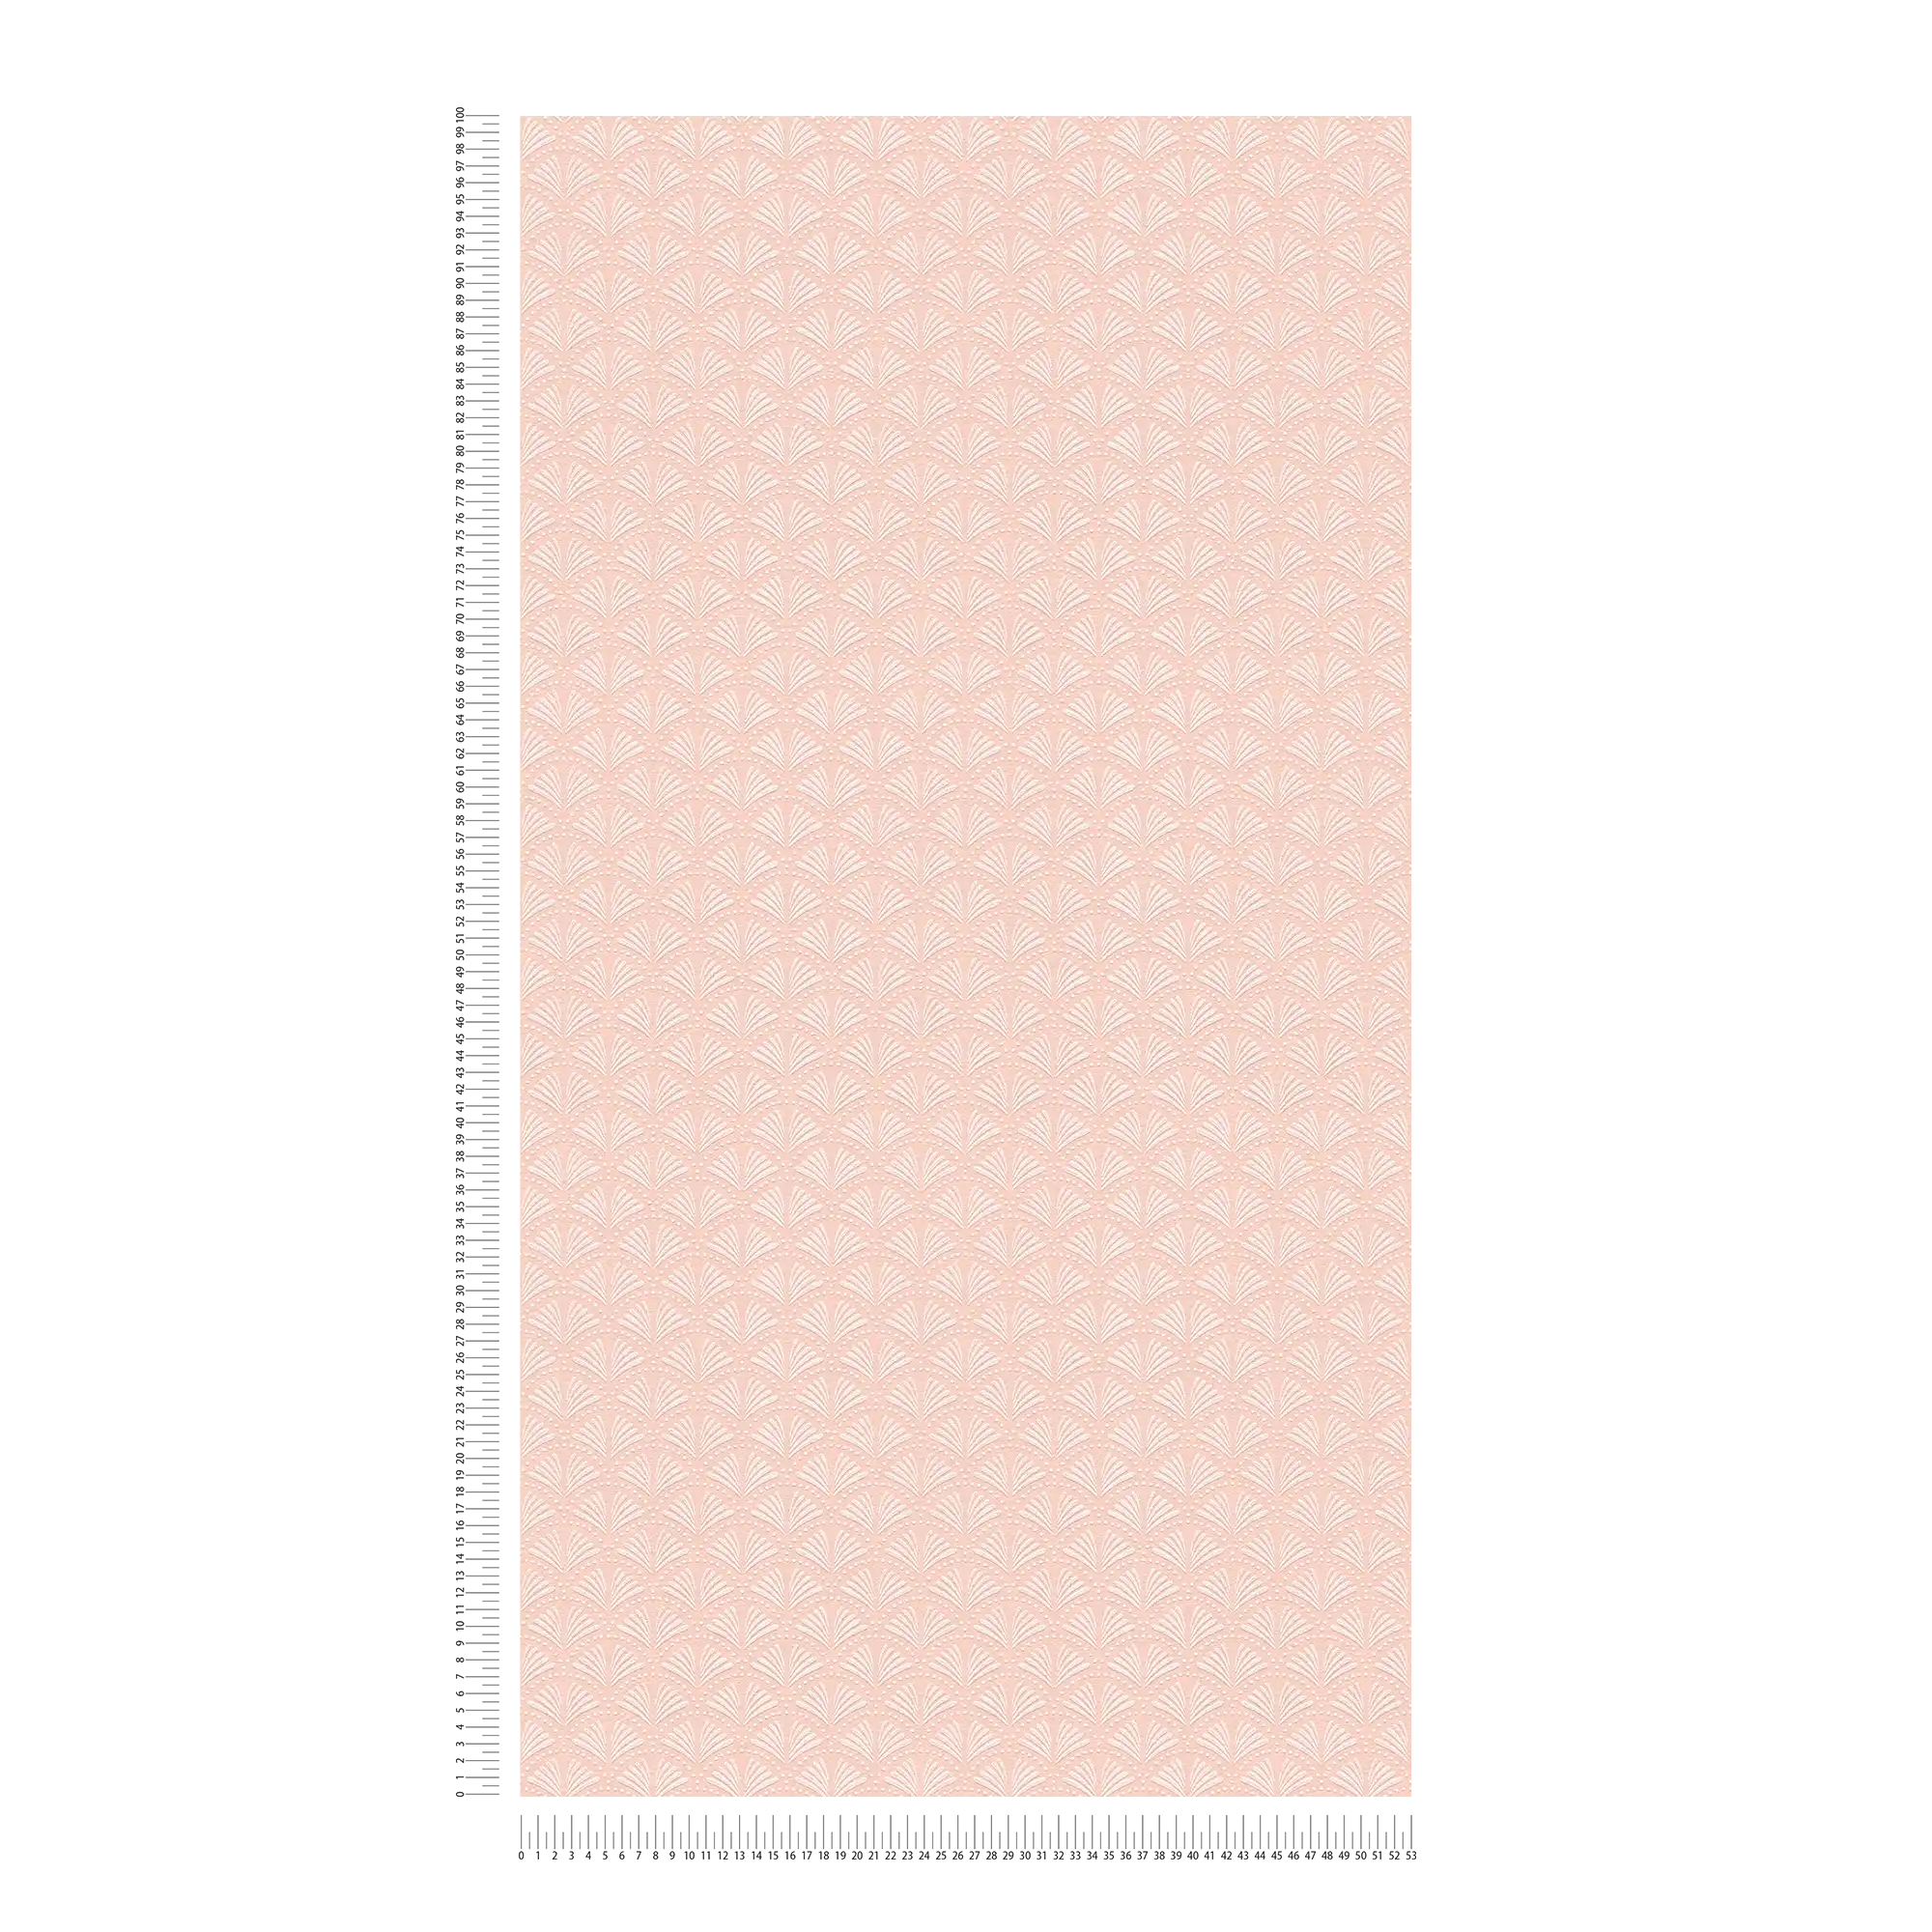             Papier peint rose scintillant avec design d'éventail dans le style rétro - métallique, rose, blanc
        